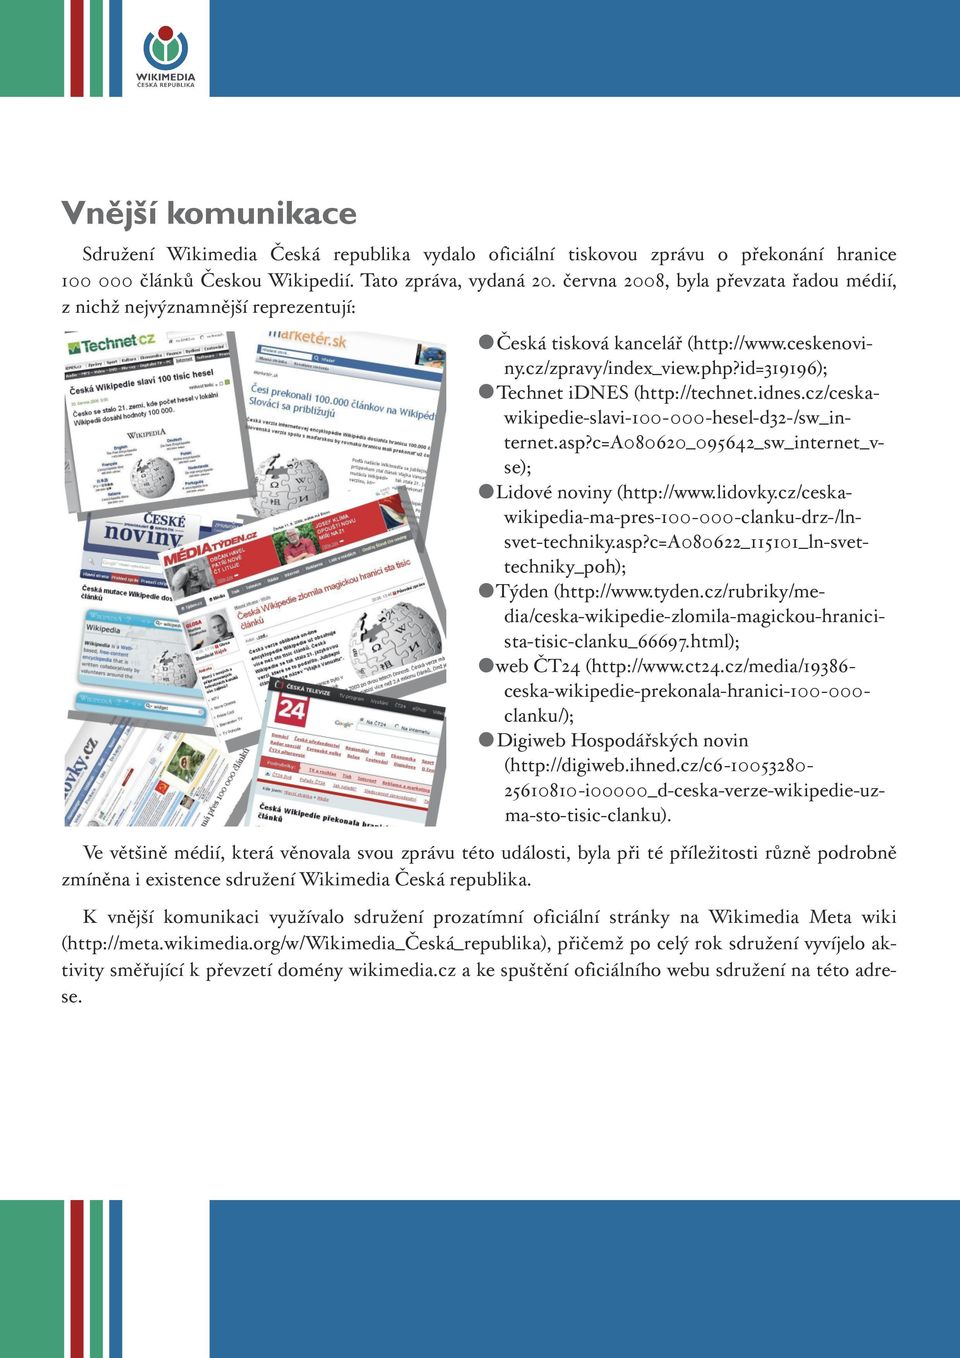 (http://technet.idnes.cz/ceskawikipedie-slavi-100-000-hesel-d32-/sw_internet.asp?c=a080620_095642_sw_internet_vse); Lidové noviny (http://www.lidovky.